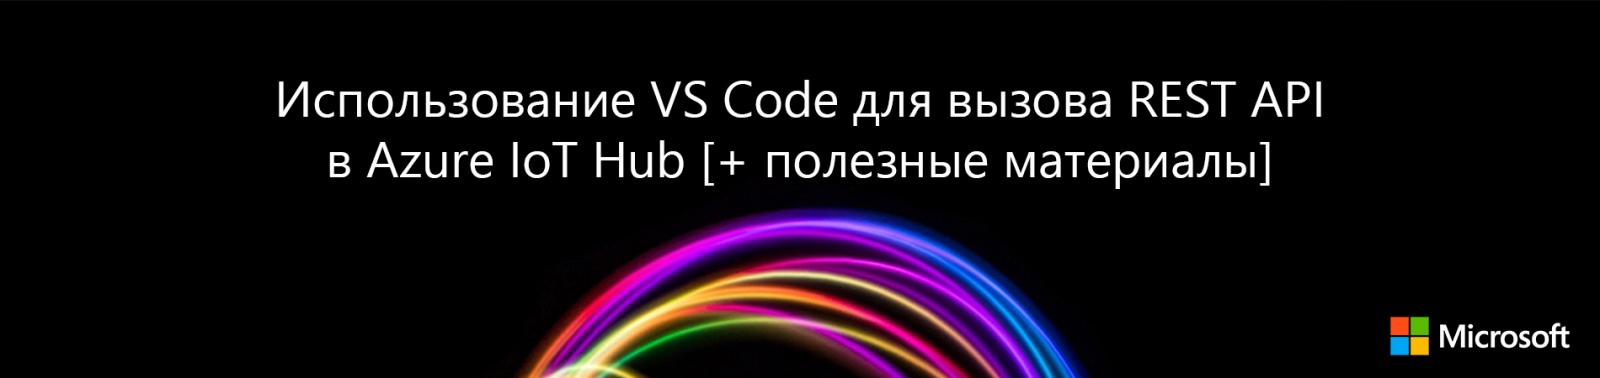 Использование VS Code для вызова REST API в Azure IoT Hub [+ полезные материалы] - 1